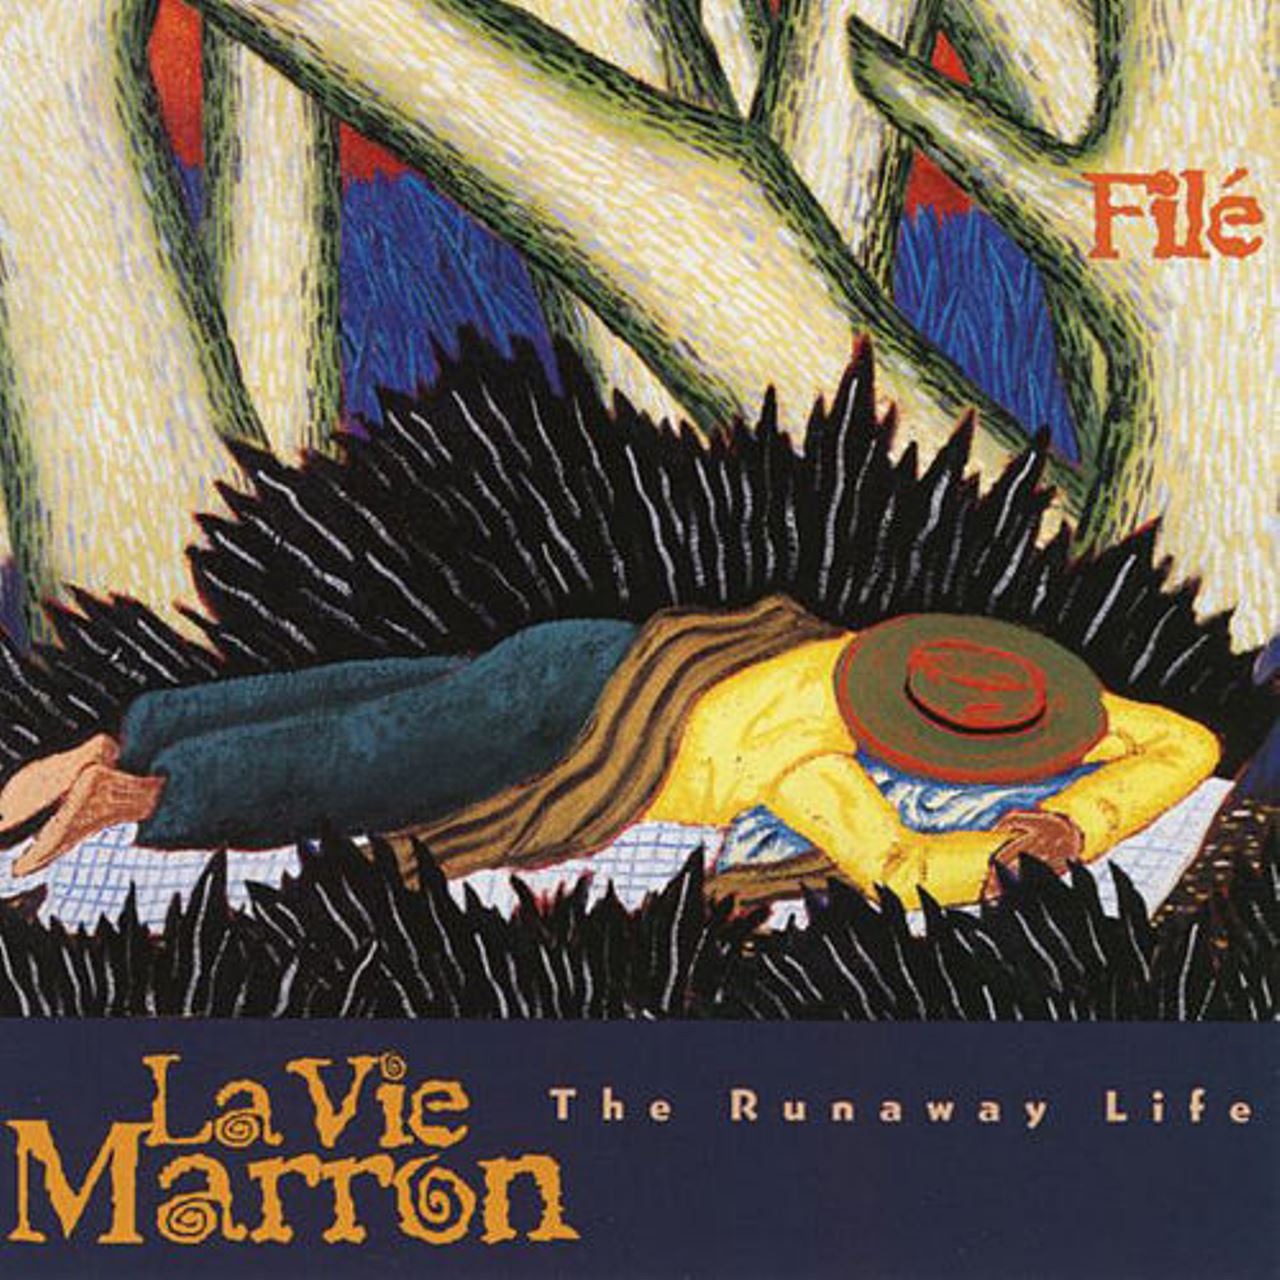 Filè – La Vie Marron - The Runaway Life cover album